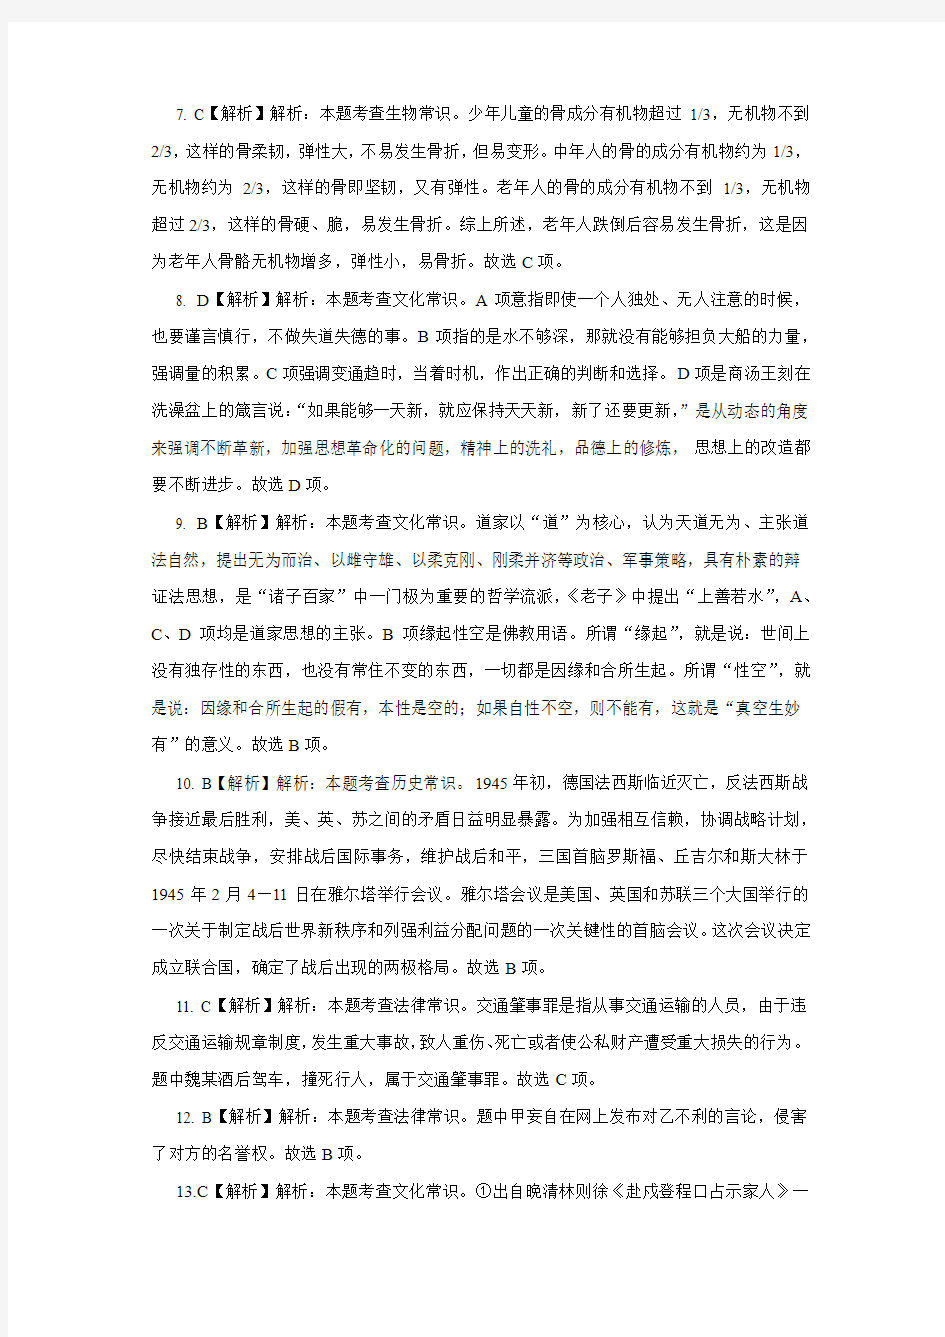 2015年广州市公务员录用考试行测答案及解析